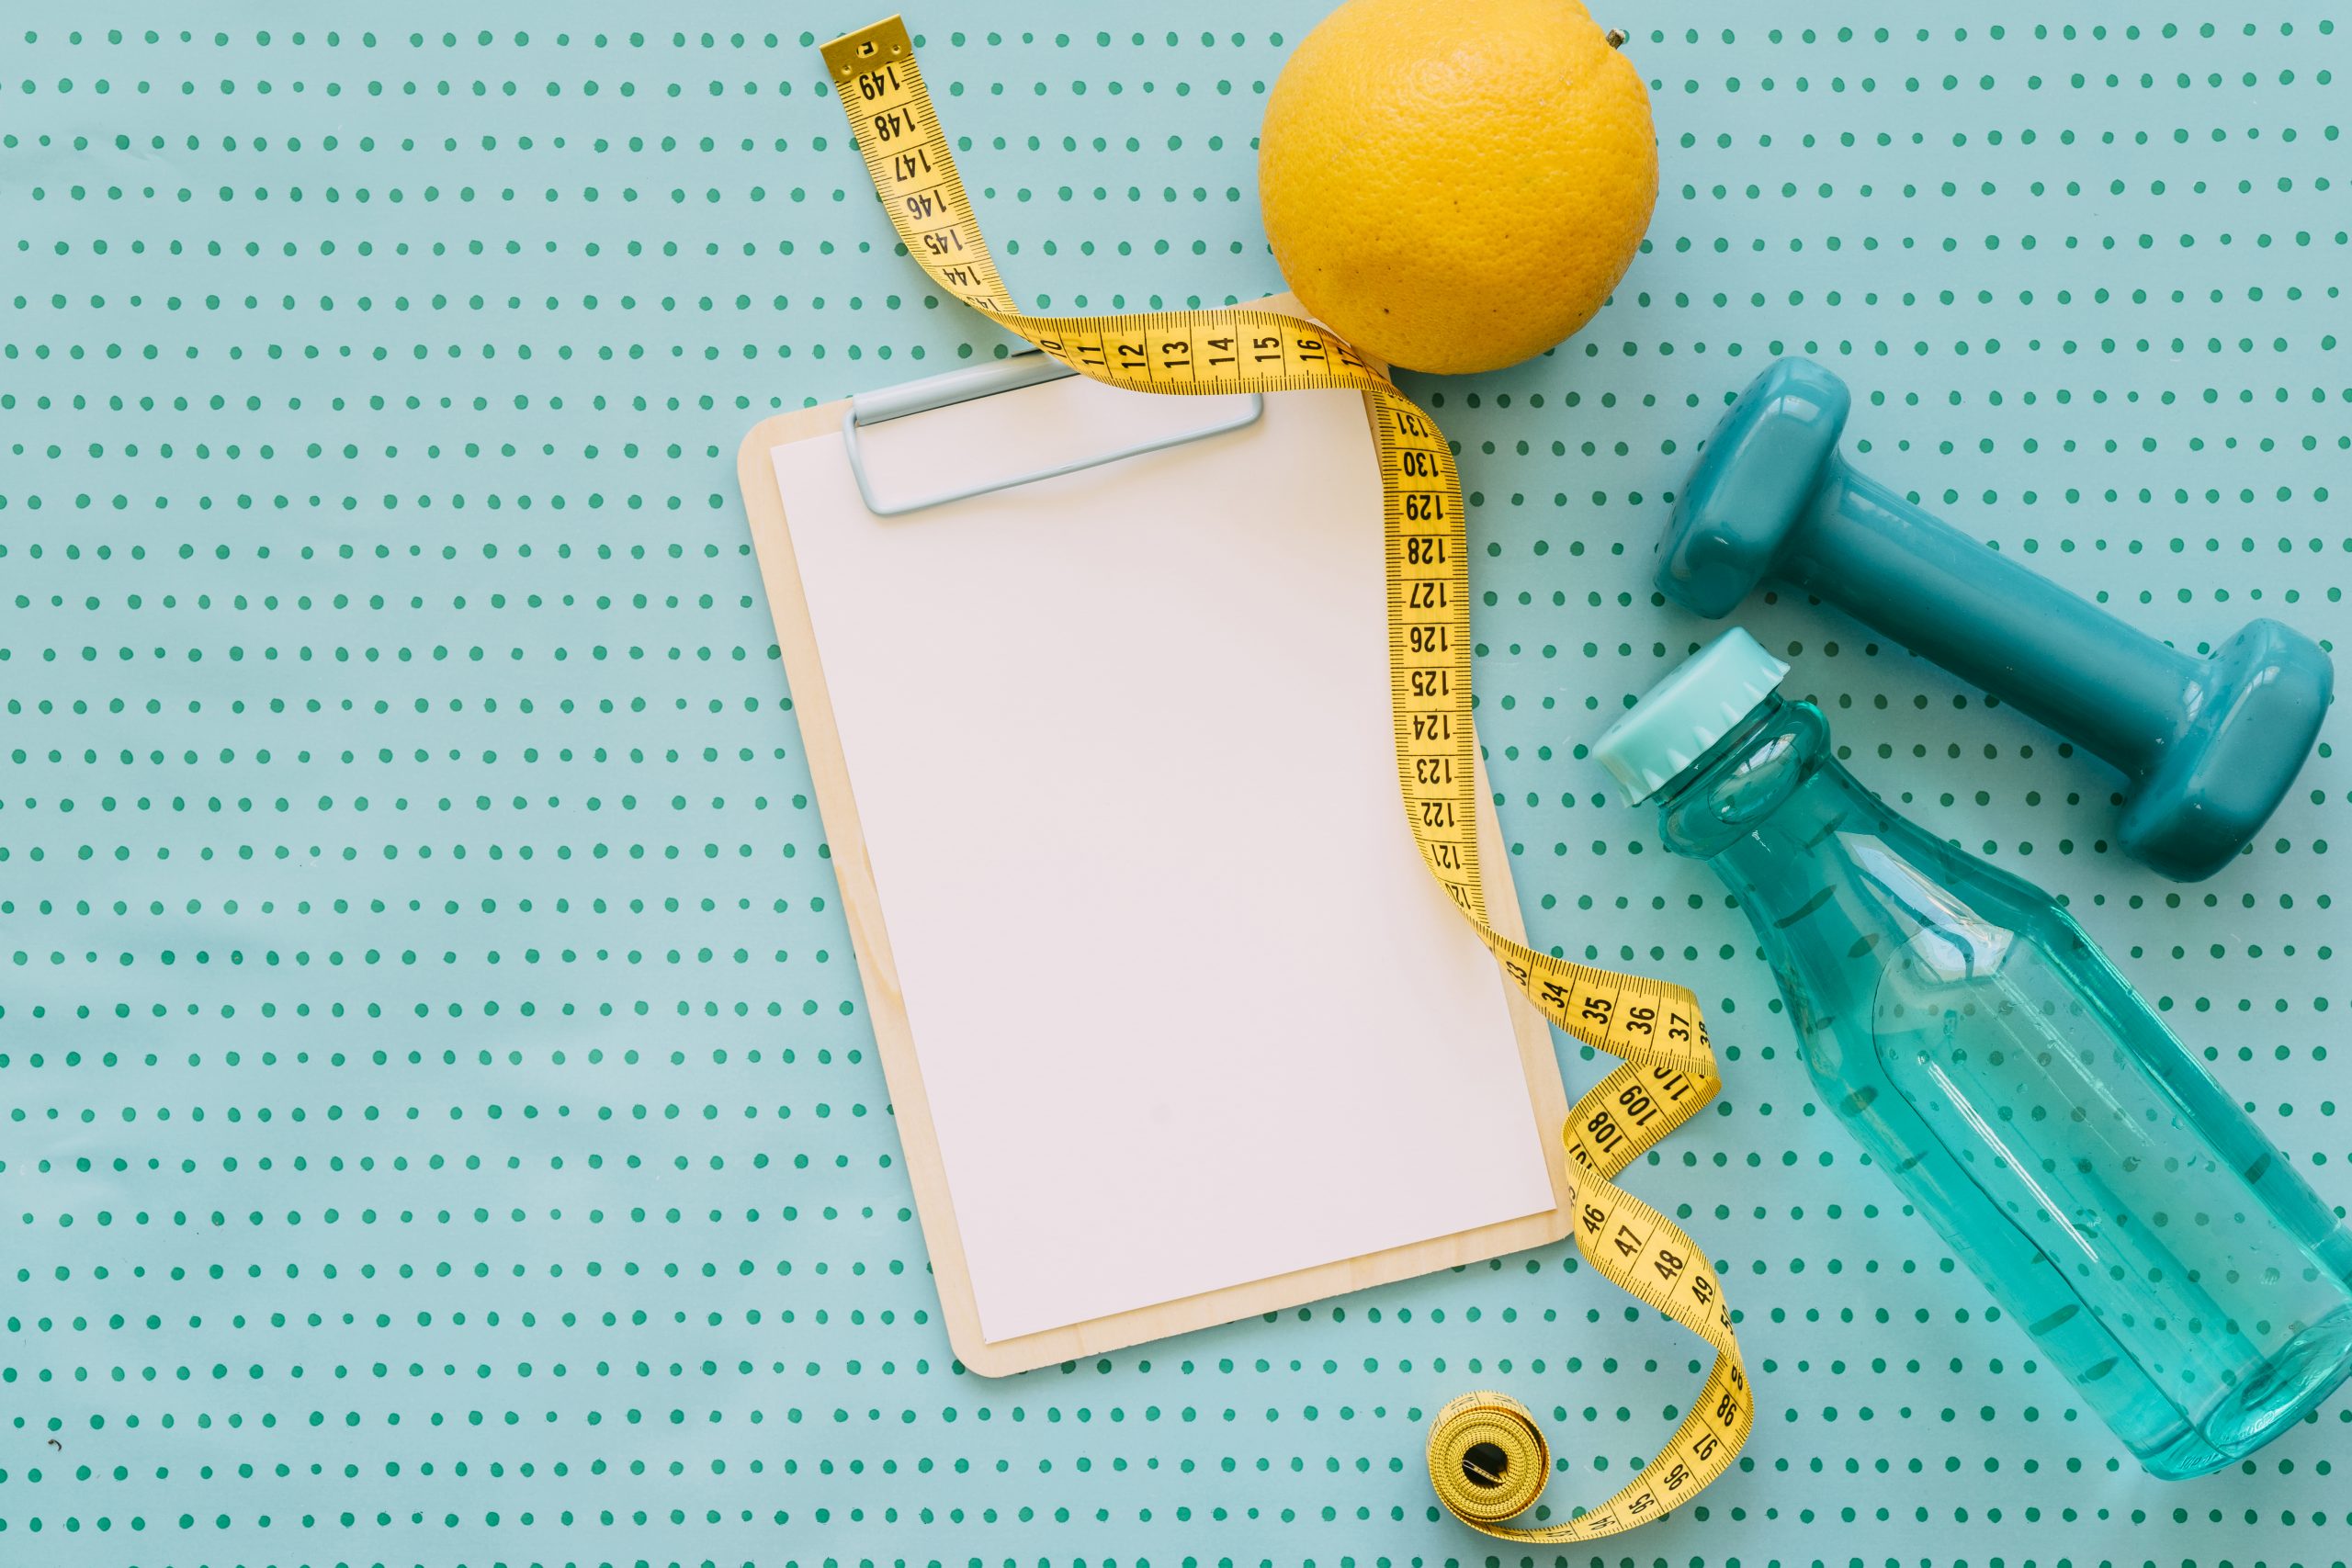 Perda de peso: guia com 10 dicas estratégicas para obter sucesso no processo de emagrecimento